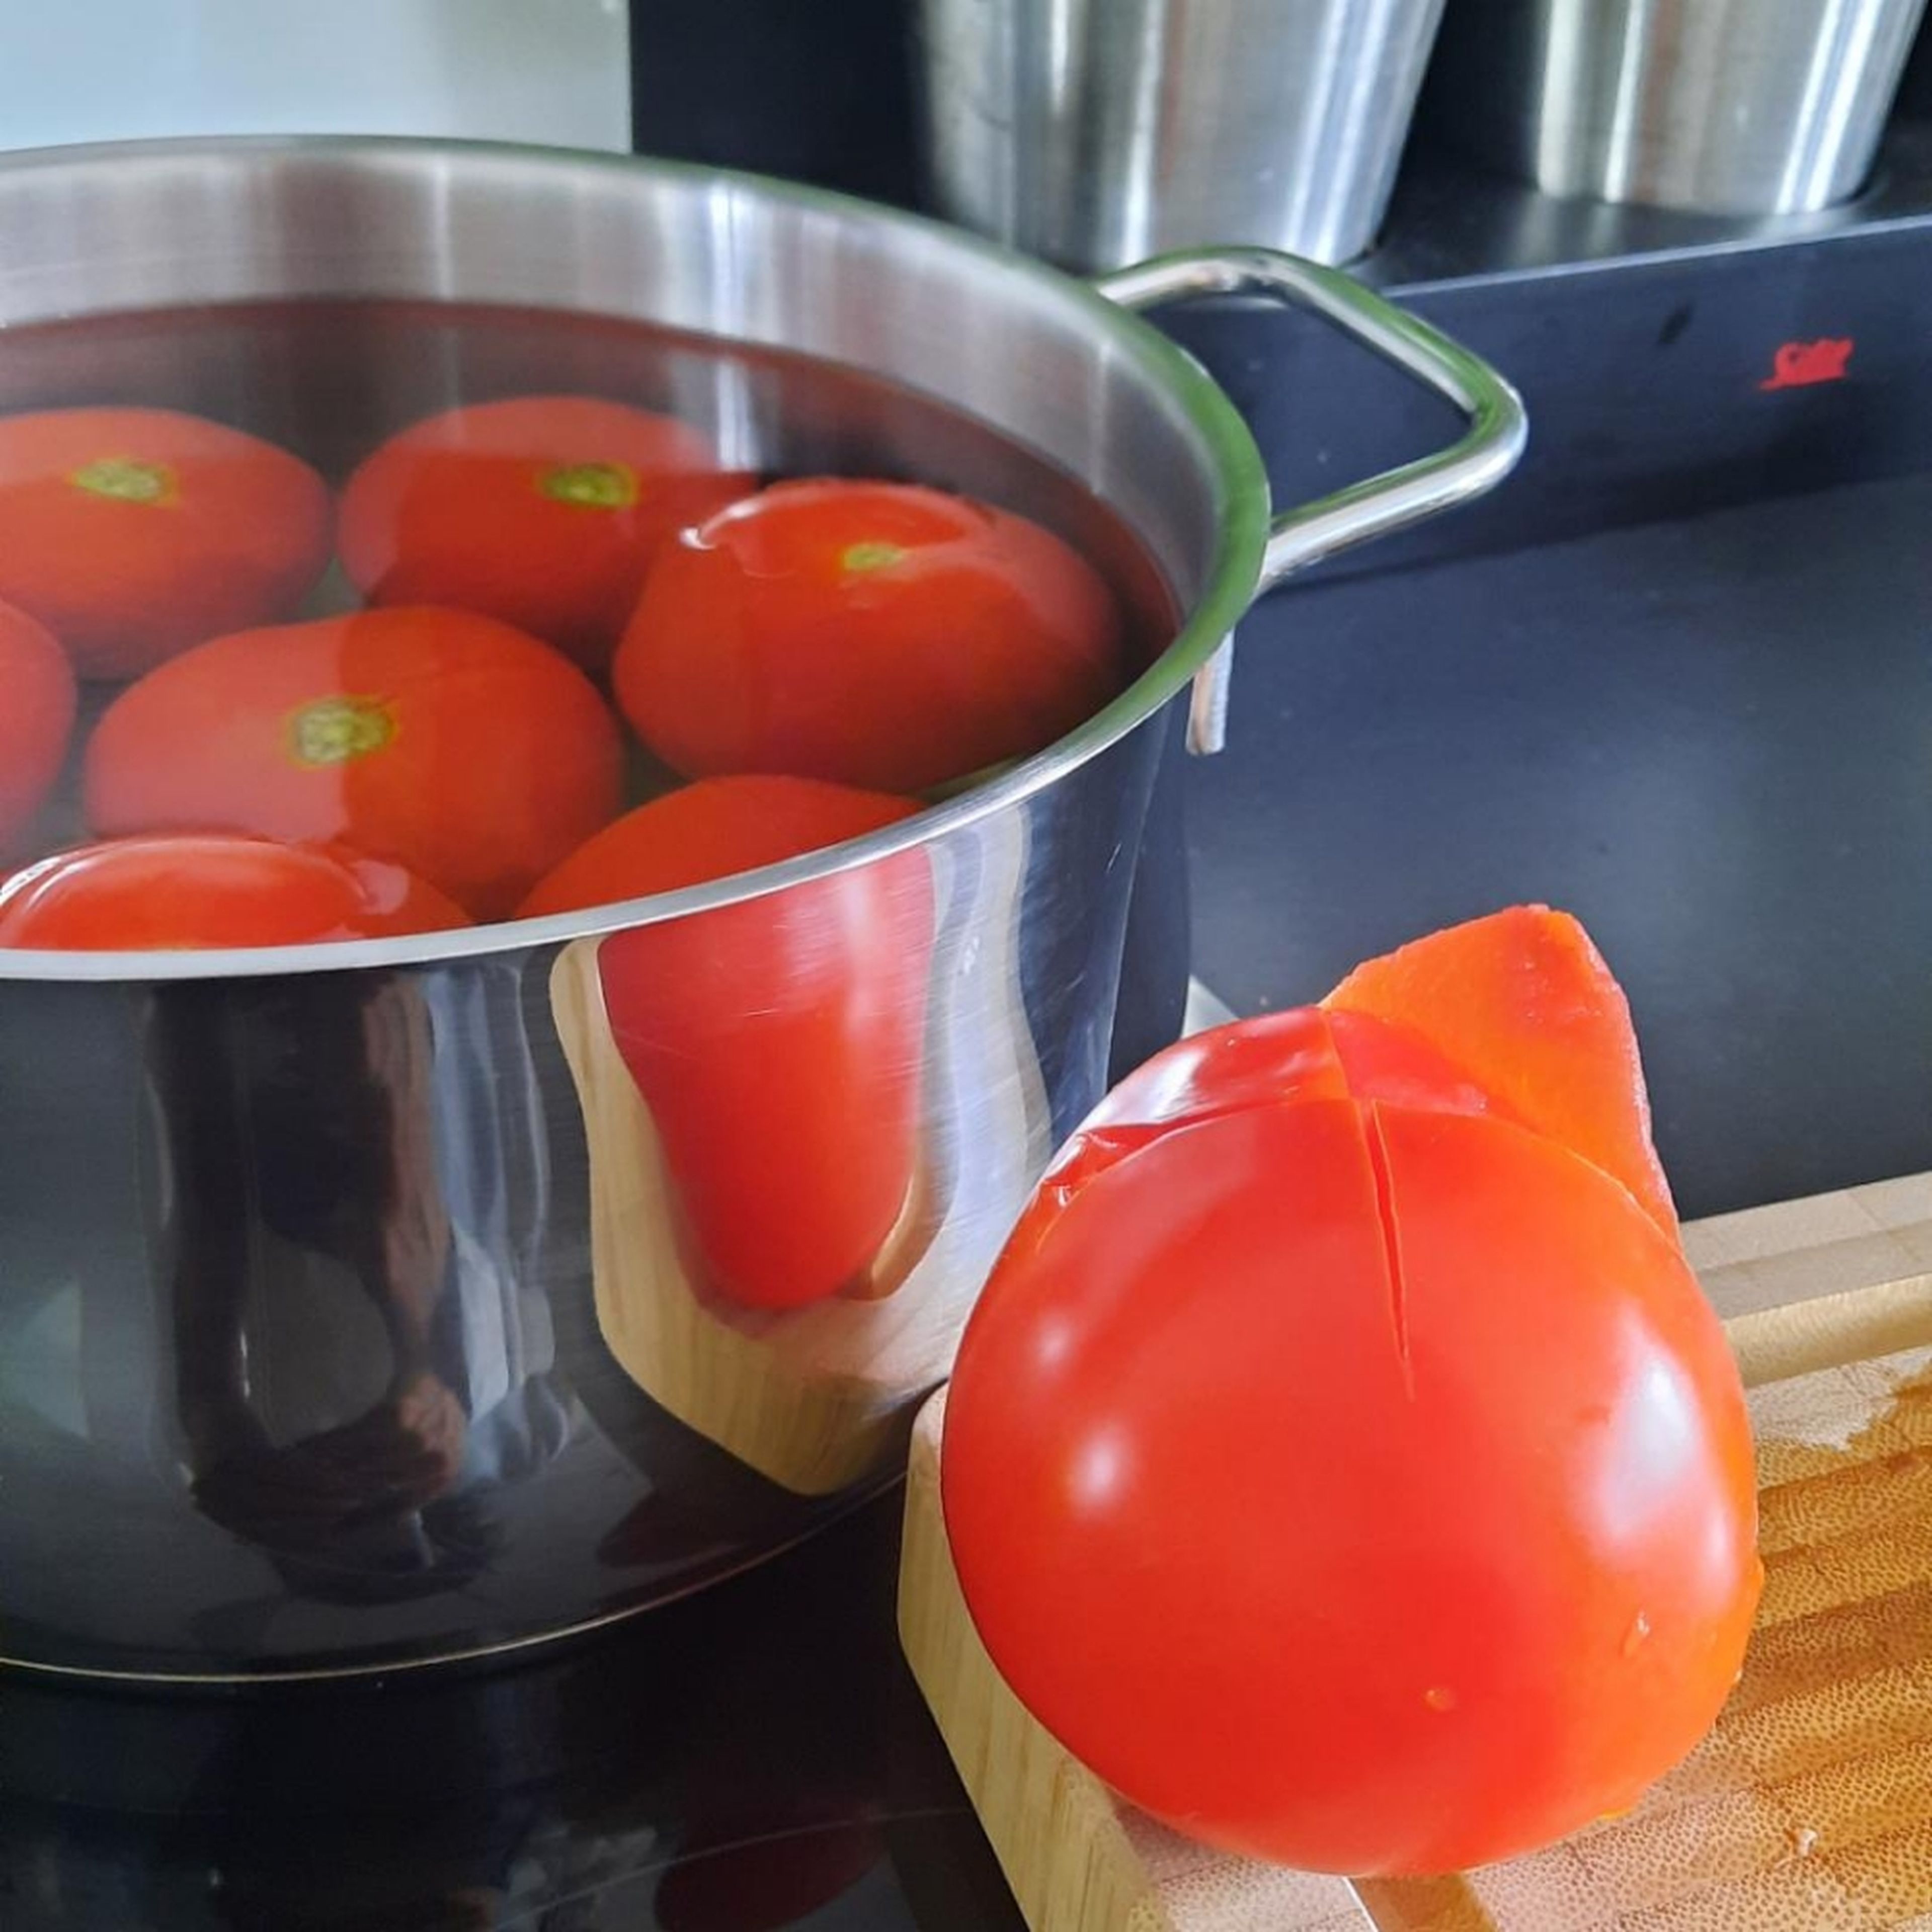 Die Tomaten häuten indem man sie 5 Min. in aufgekochtes Wasser legt. Kreuze einschneiden und Haut einfach abziehen.